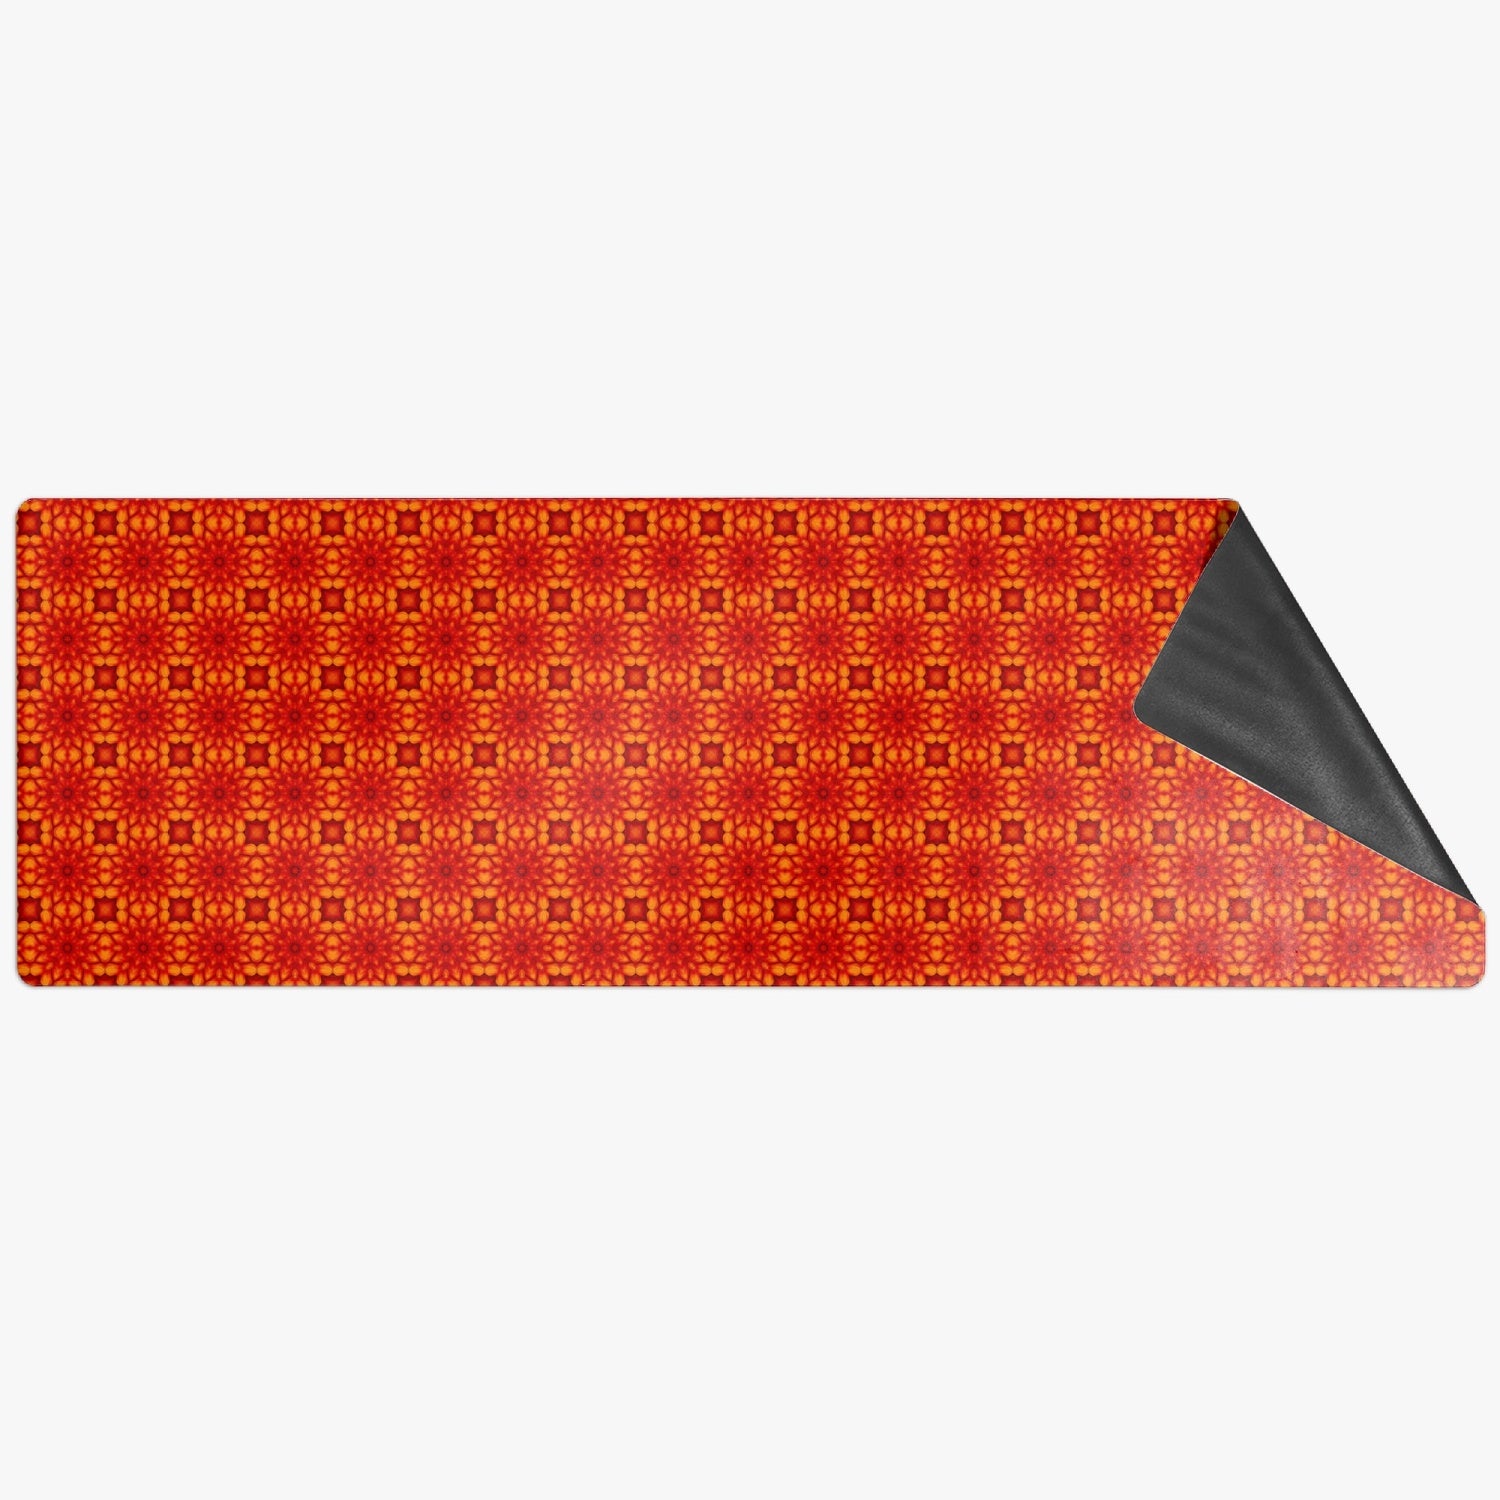 Orange Sacral Chacra  Suede Anti-slip Yoga Mat, by Sensus Studio Design